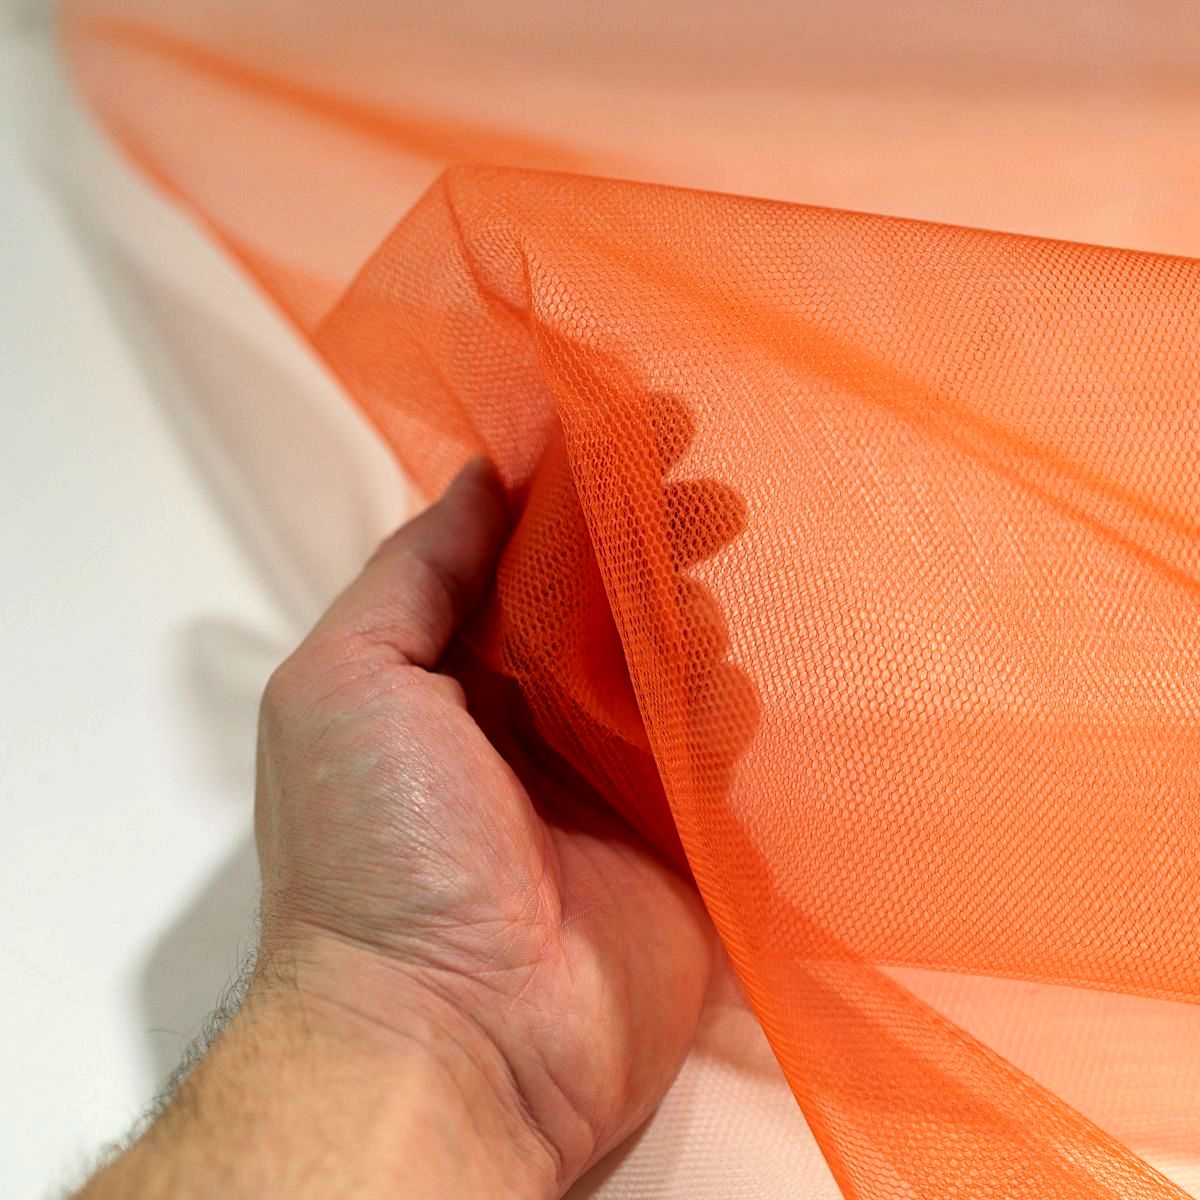 Tüllstoff Meterware 140cm breit für Gardine Vorhang Store Hochzeit Orange